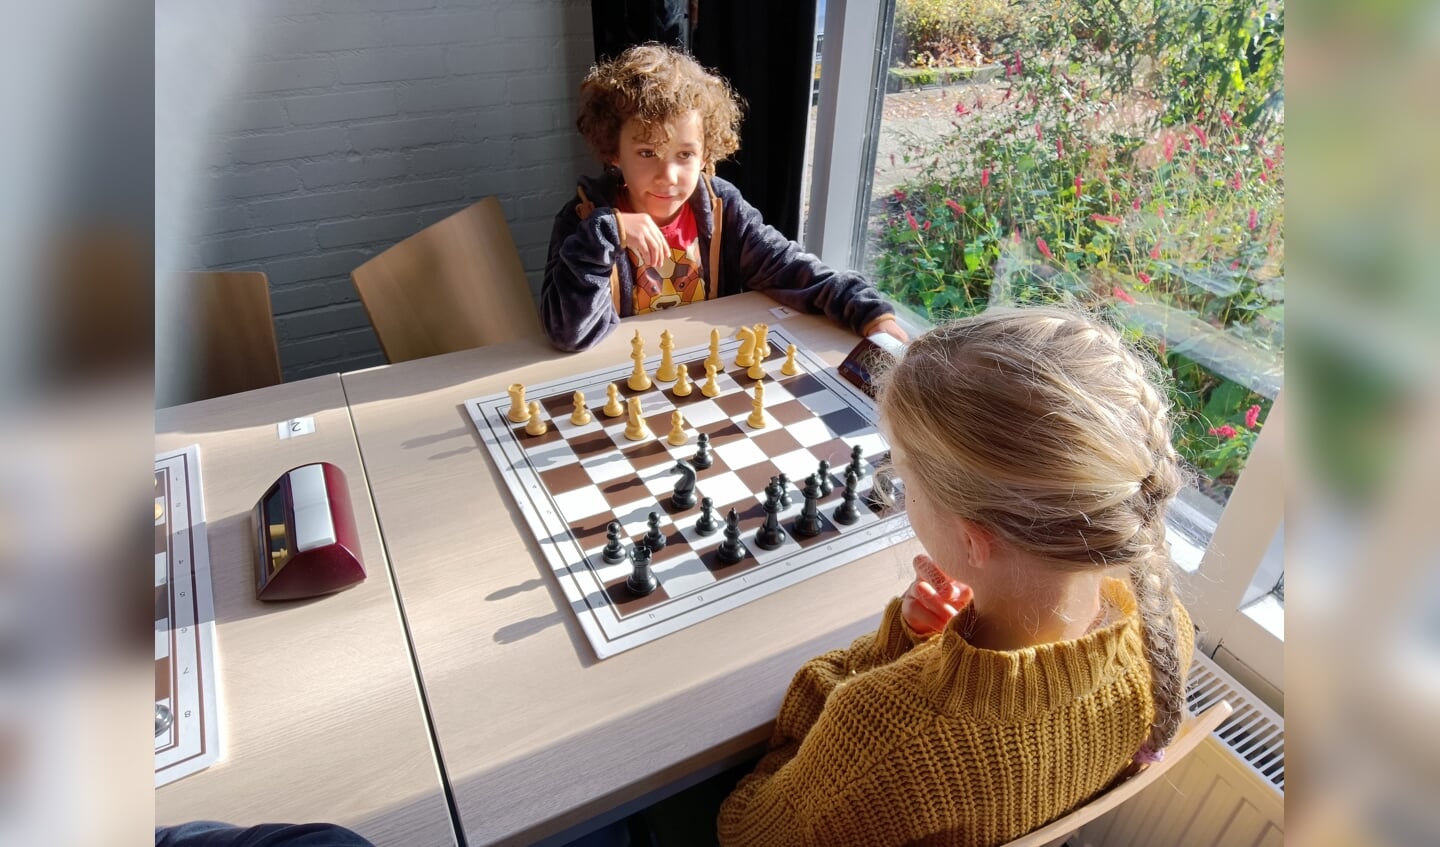 De 9-jarige Samuel Molenaar tijdens zijn allereerste officiële schaakpartij ooit. Foto: Rudi Hofman